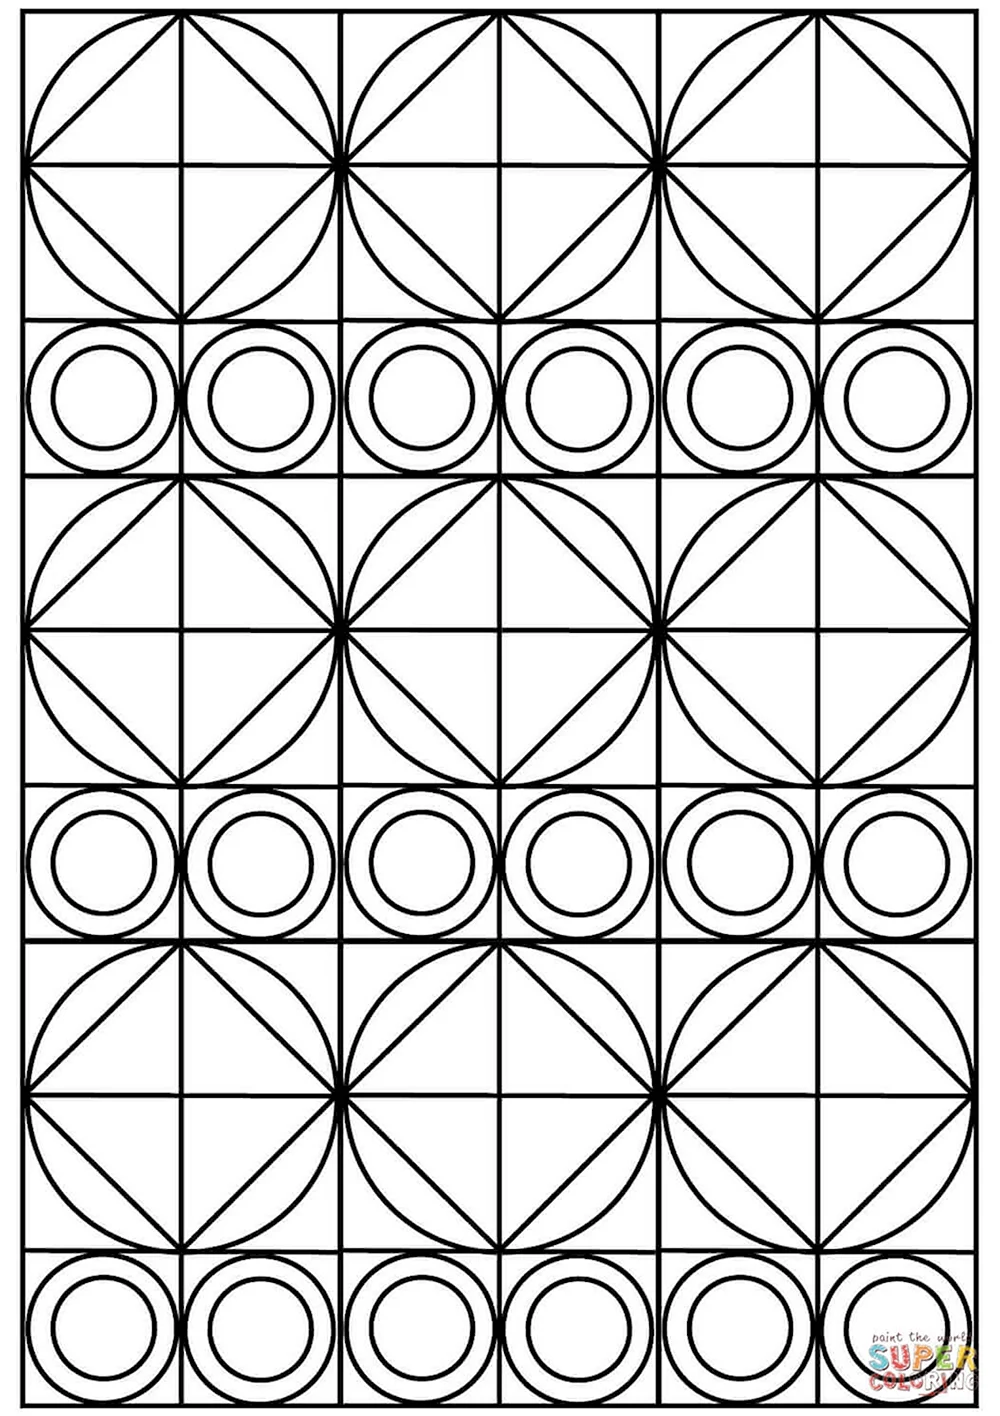 Орнамент из кругов и квадратов